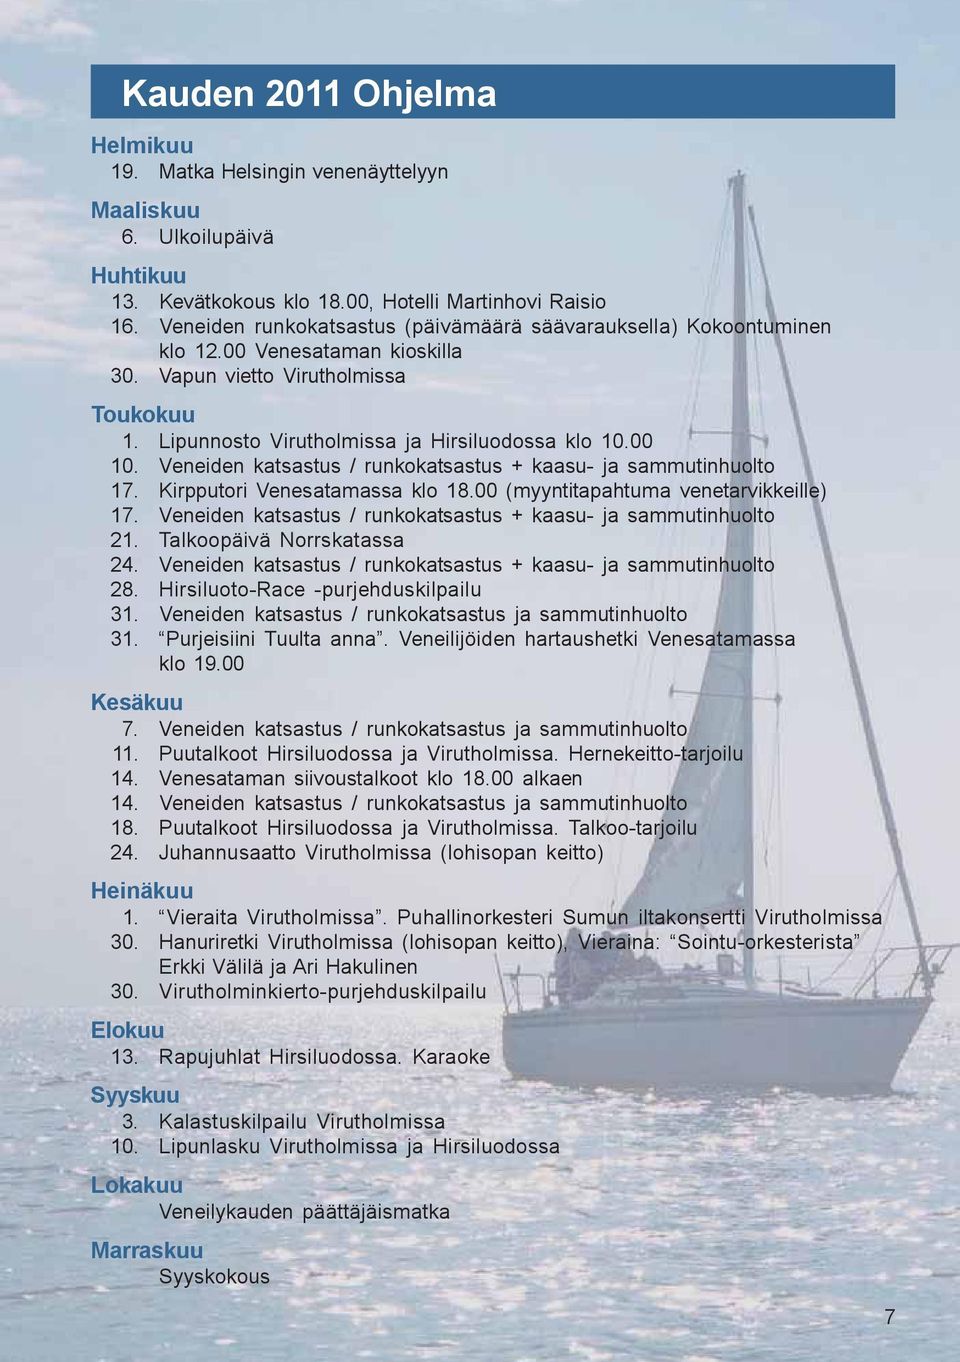 Veneiden katsastus / runkokatsastus + kaasu- ja sammutinhuolto 17. Kirpputori Venesatamassa klo 18.00 (myyntitapahtuma venetarvikkeille) 17.